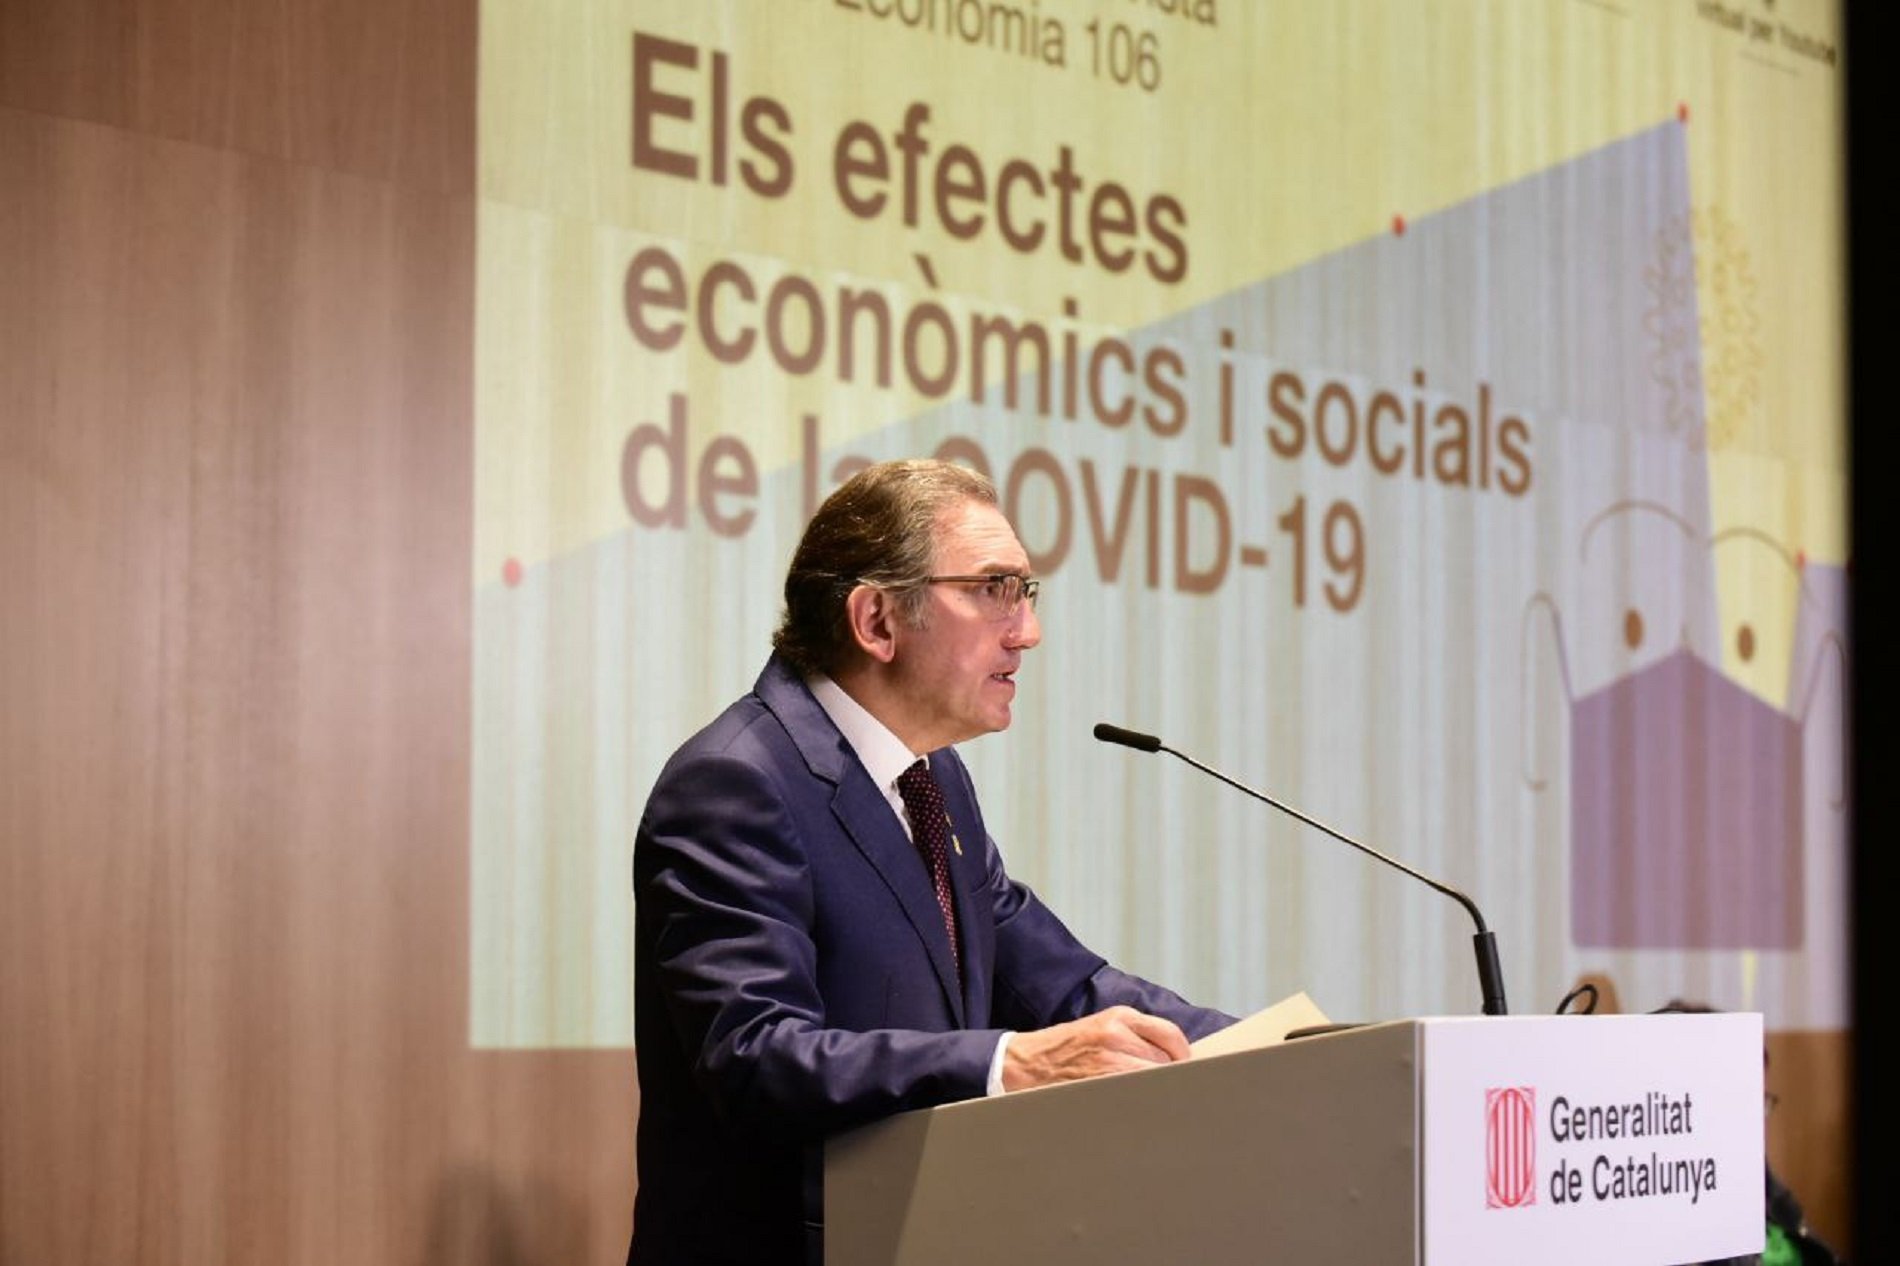 Giró critica al Estado por priorizar el centralismo a los intereses de Catalunya